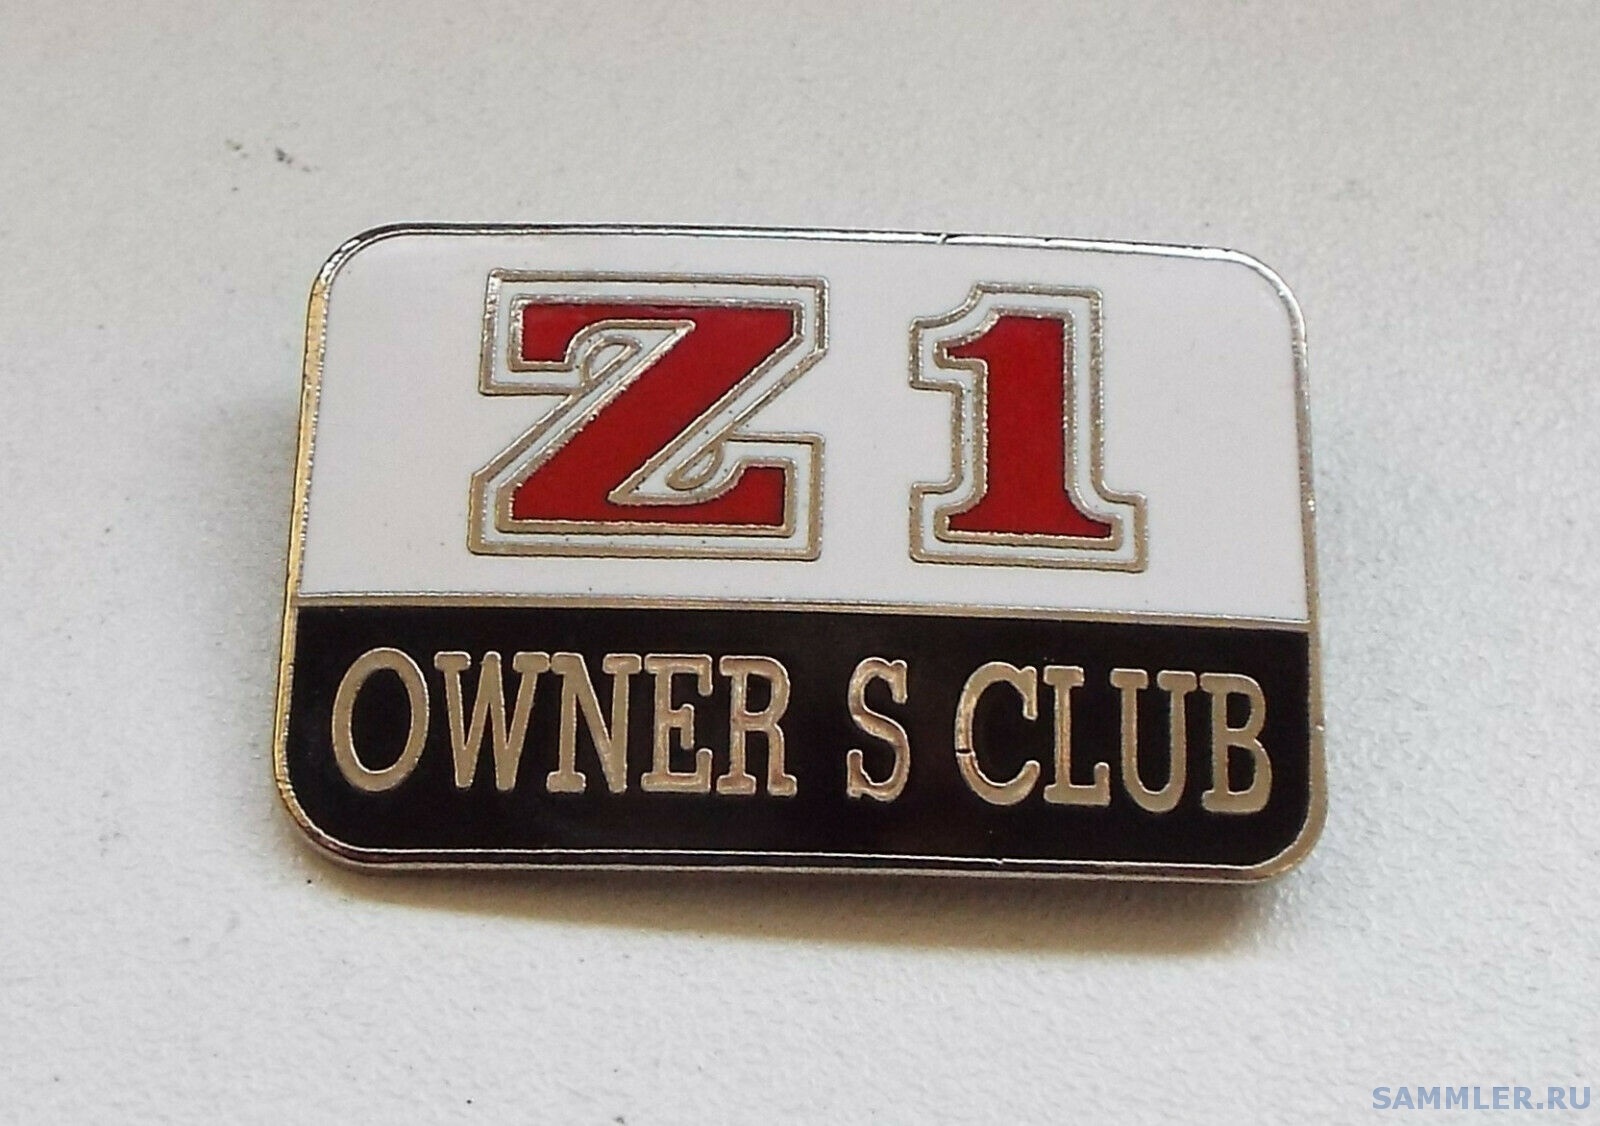 Z1 (Kawasaki) Owner's Club Motor Cycle Enamel Badge.jpg